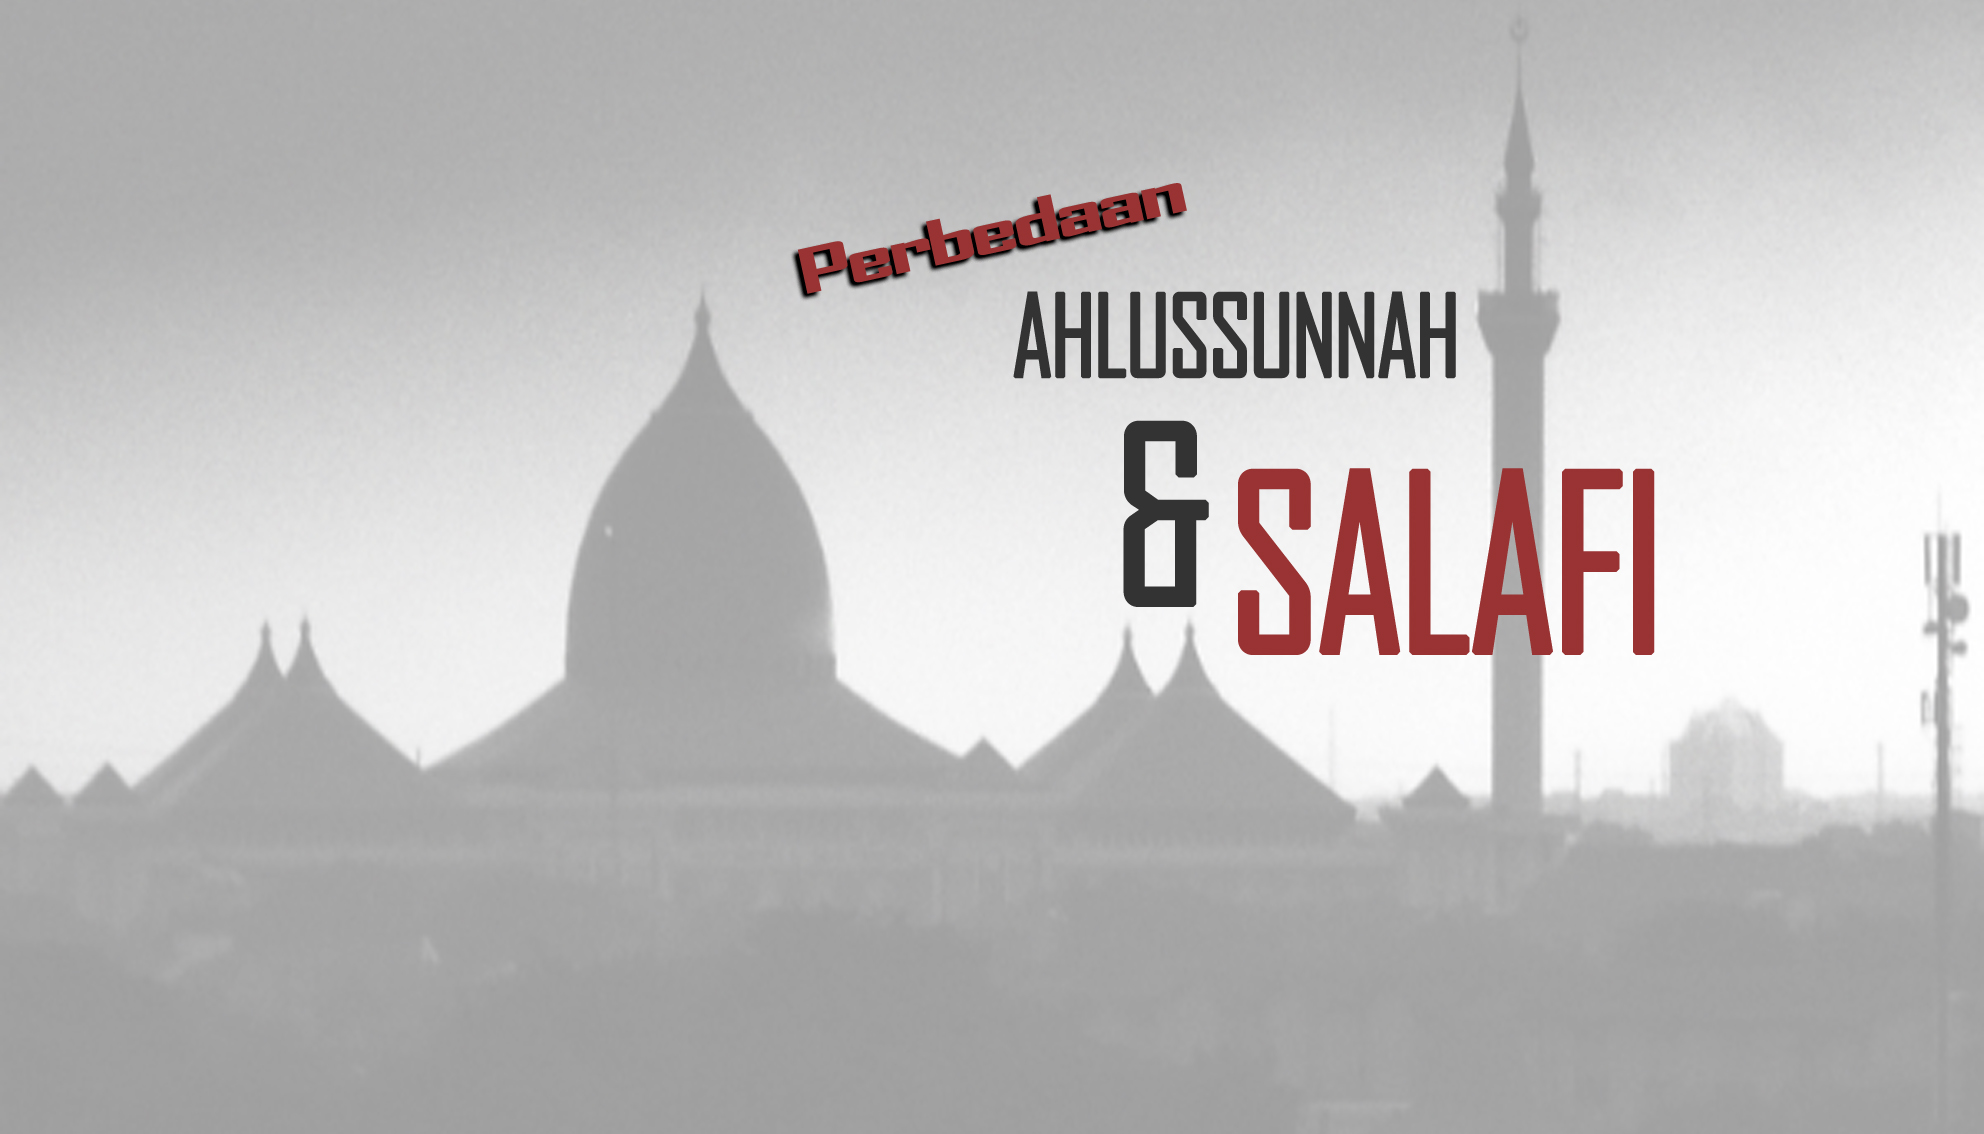 Apakah Perbedaan Ahlussunnah Dengan Salafi??